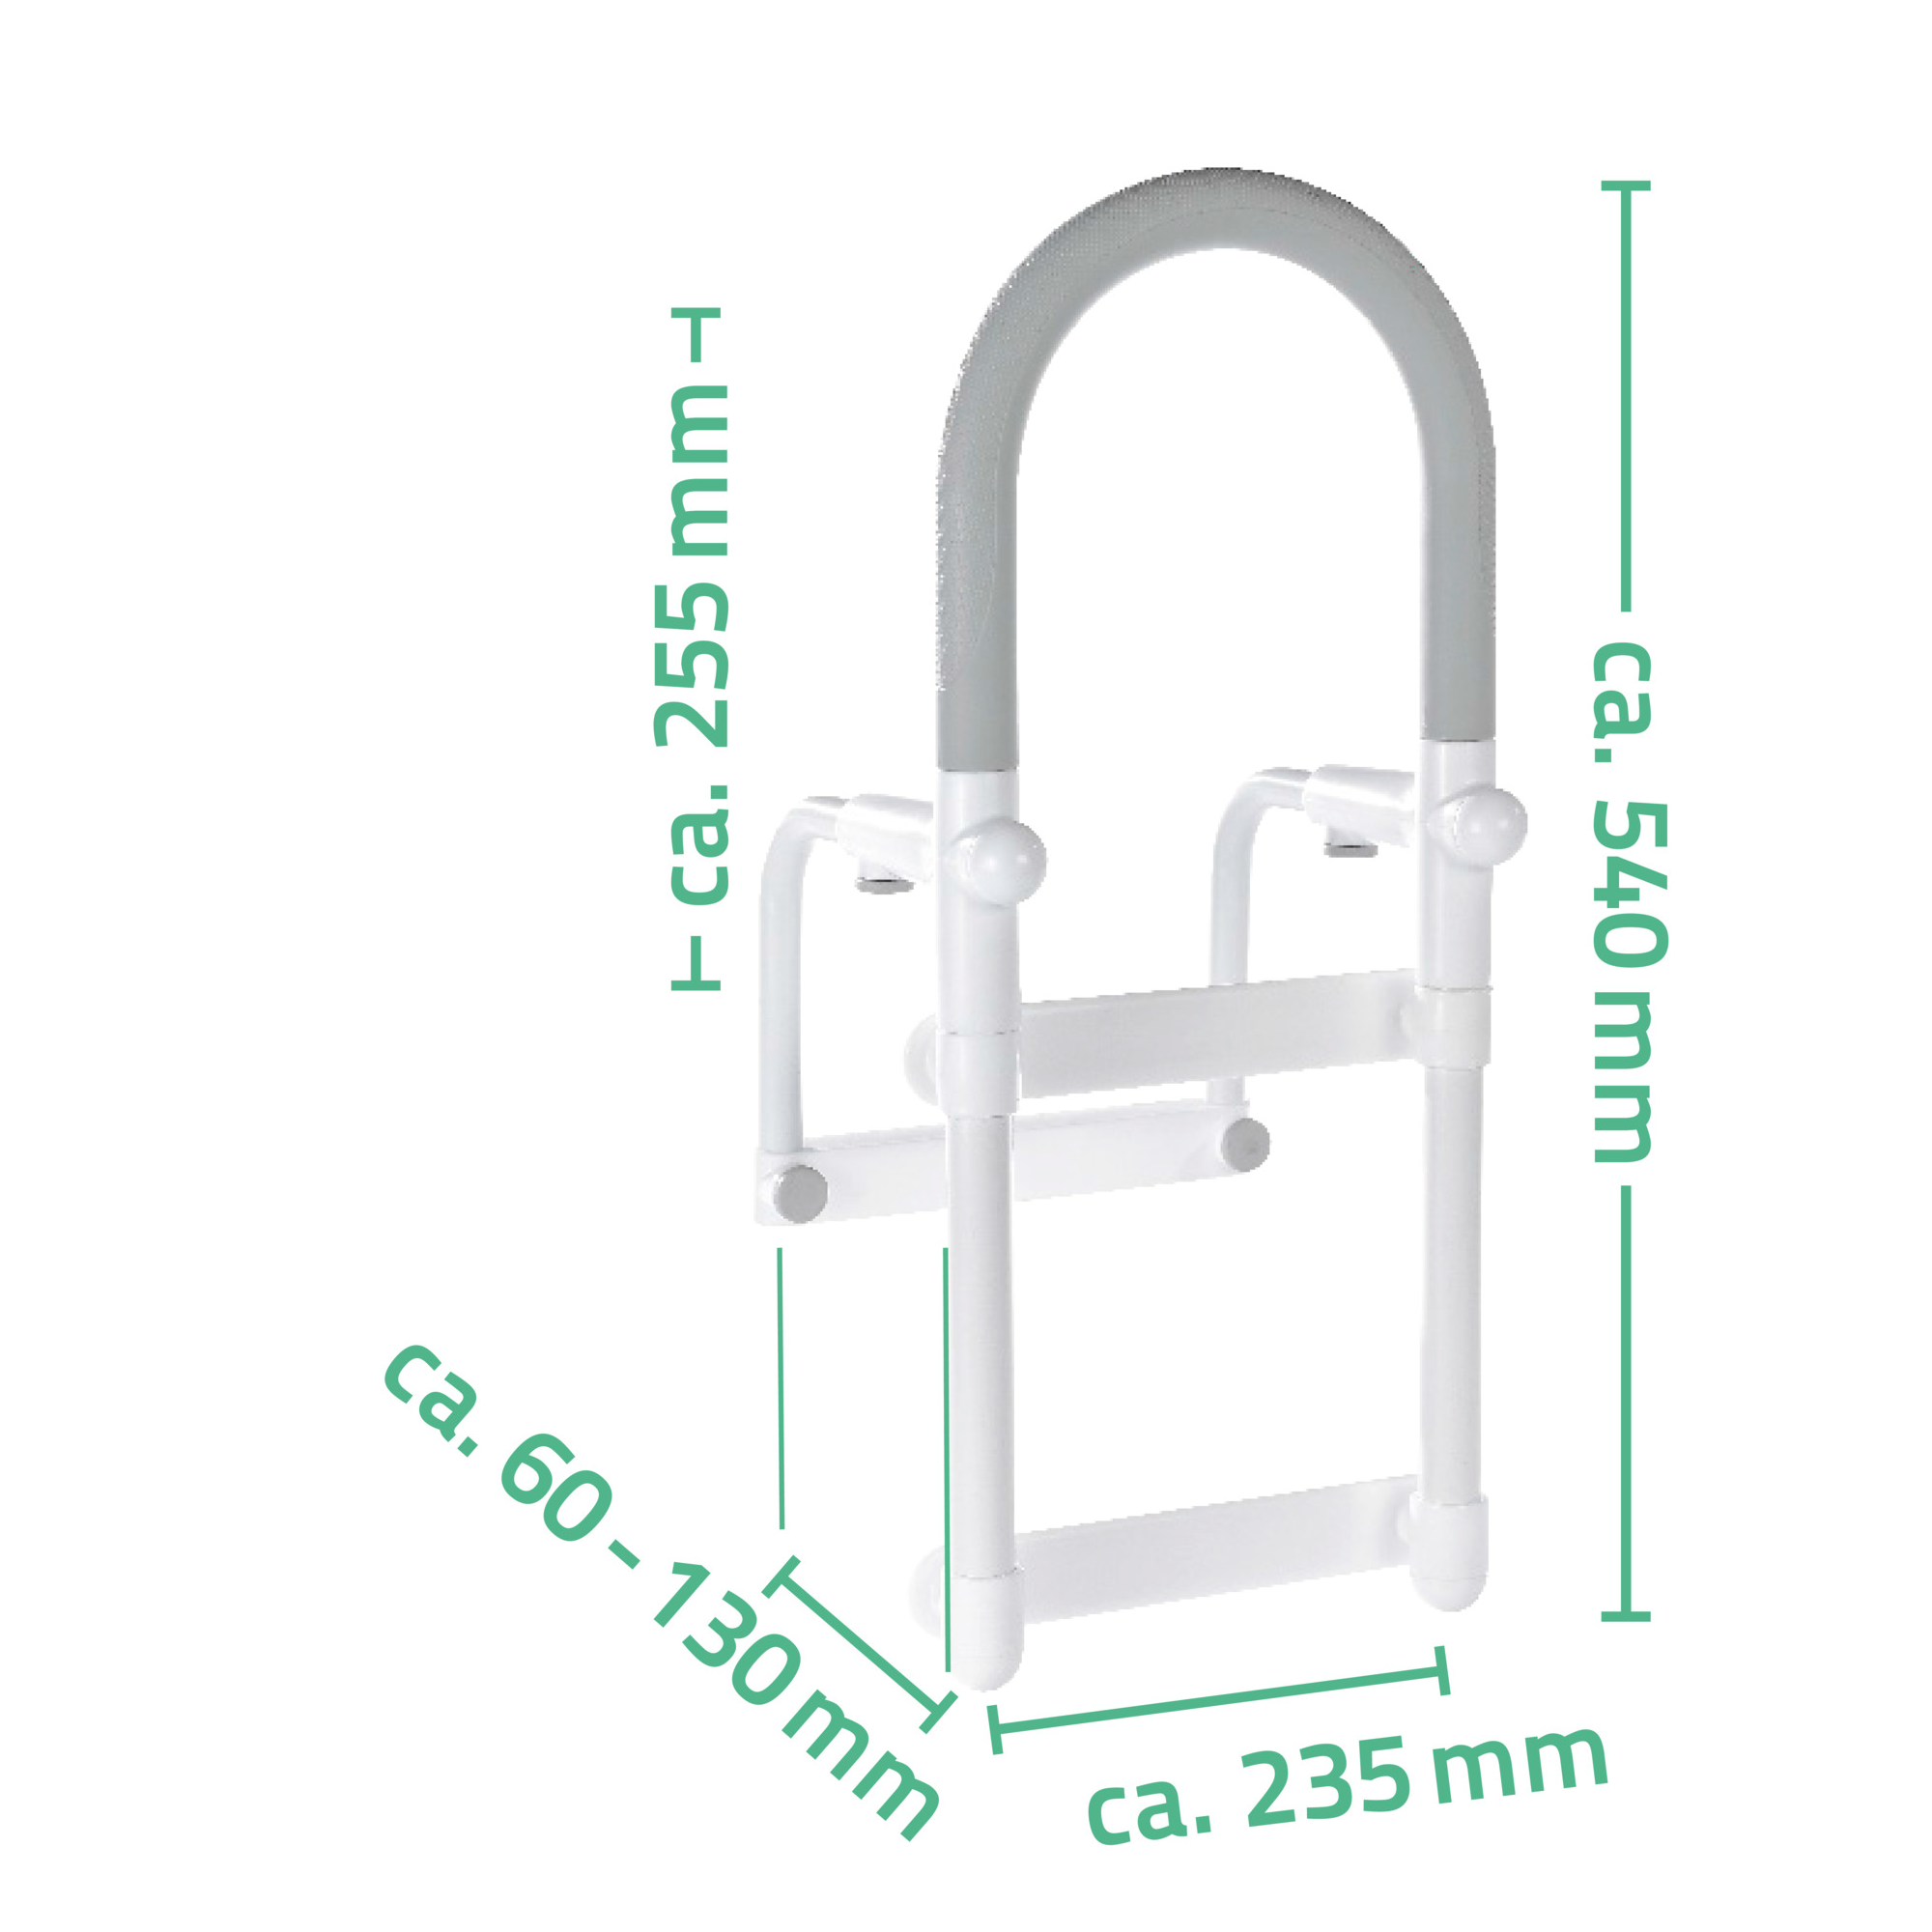 Badewannen-Einstiegshilfe 'Comfort' weiß, 54 cm, bis 100 kg + product picture